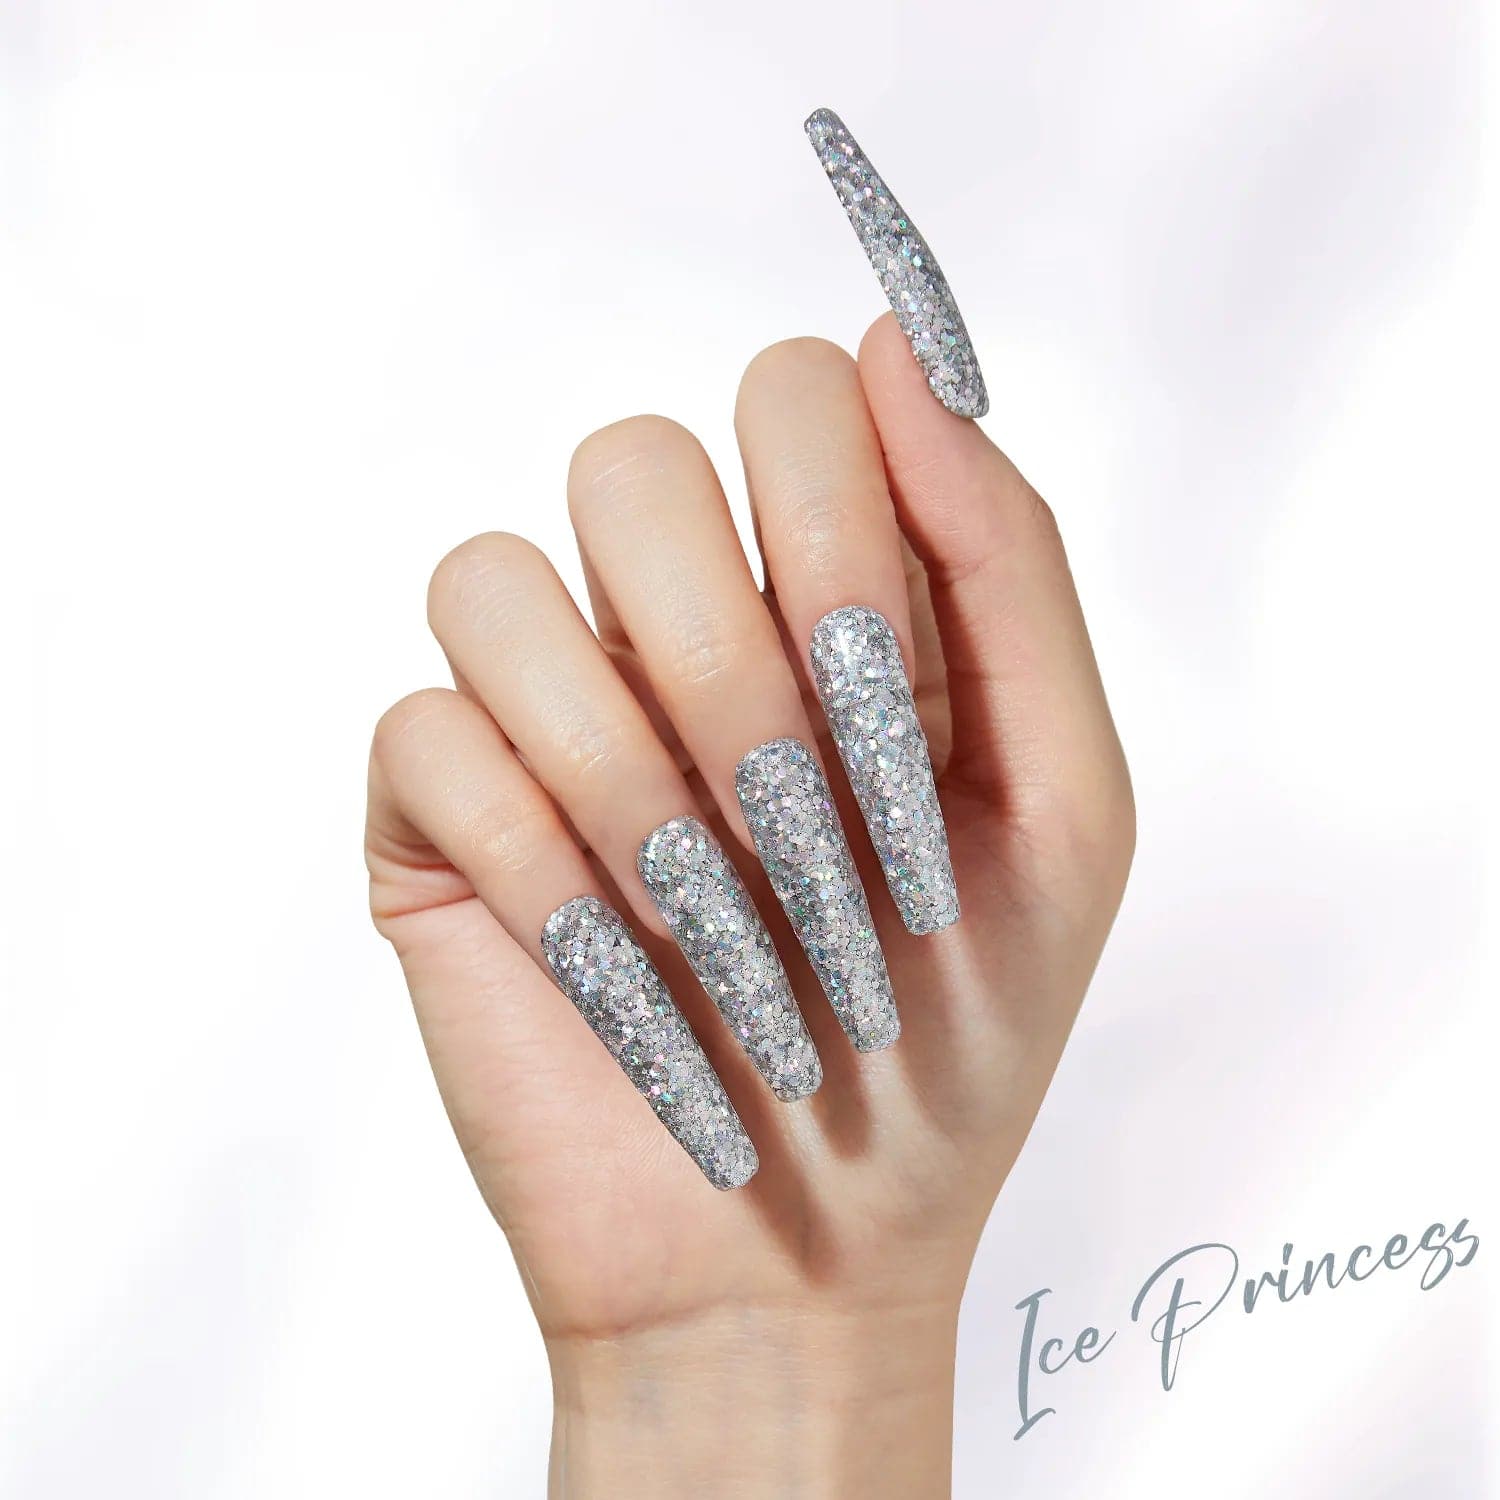 Ice Princess - Nail Art Glitter